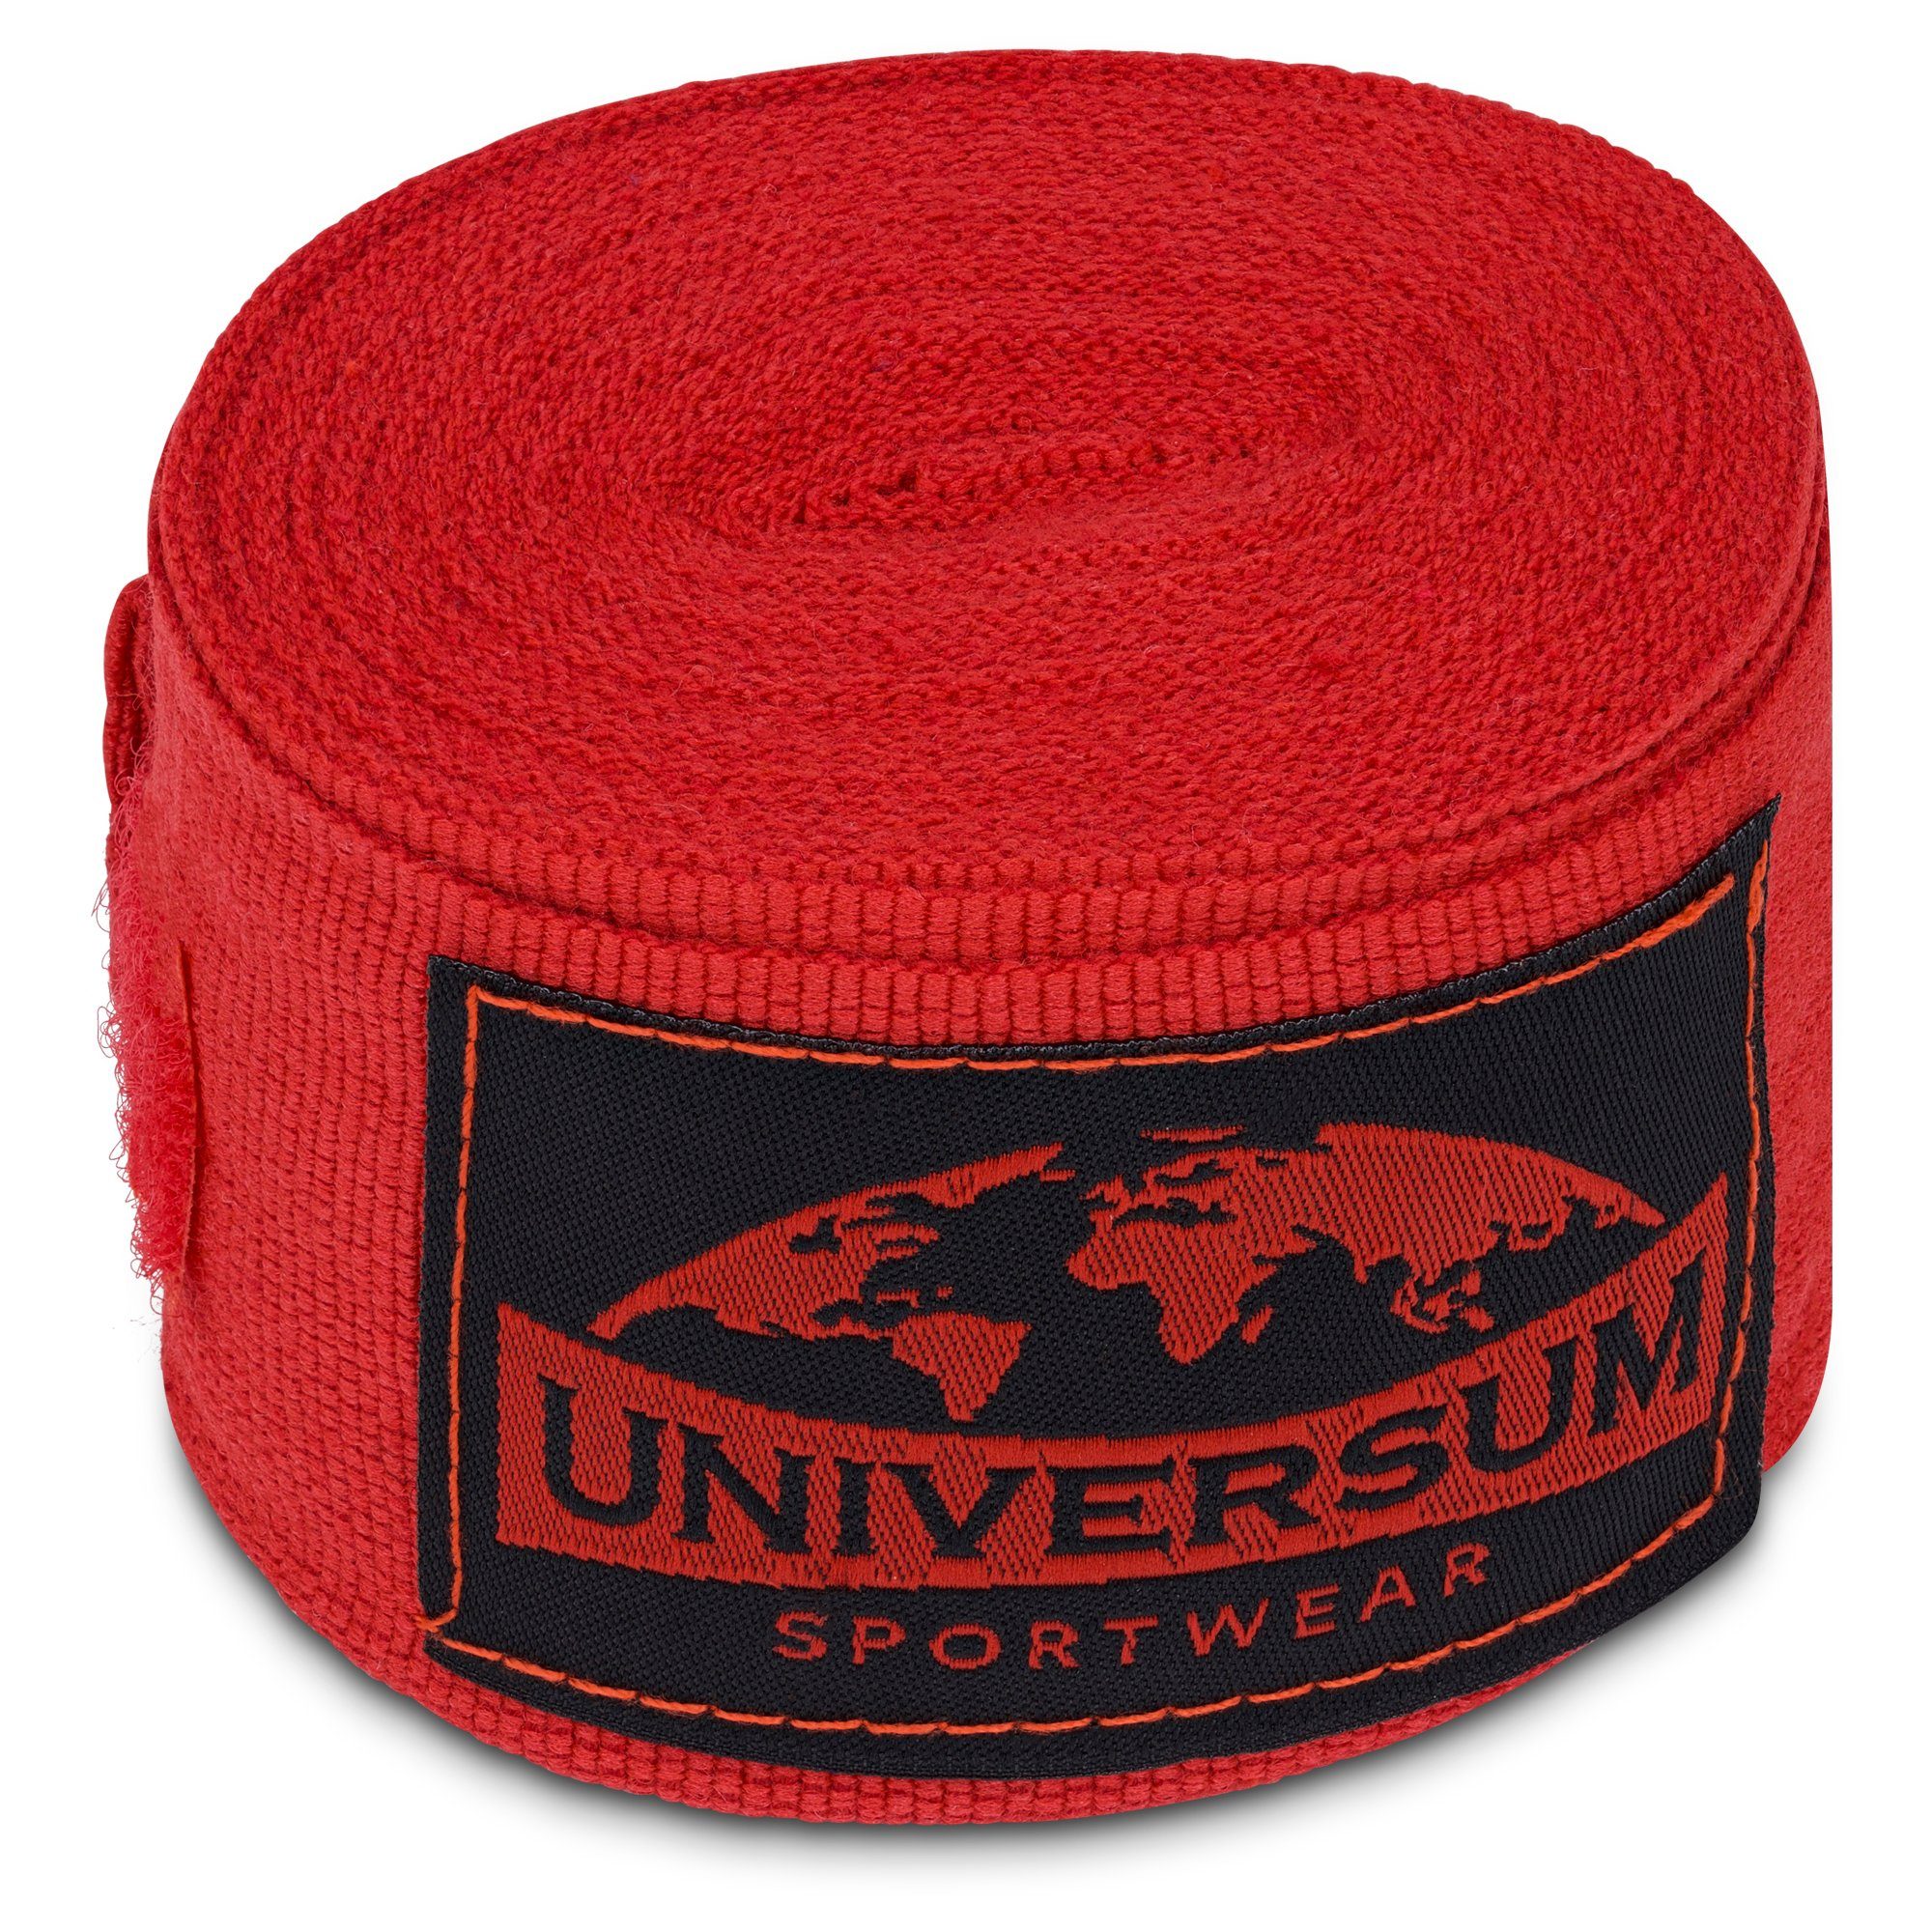 langen Rot-Schwarz Sportwear Bandage, mit Handgelenk Universum Boxbandagen Klettverschluss